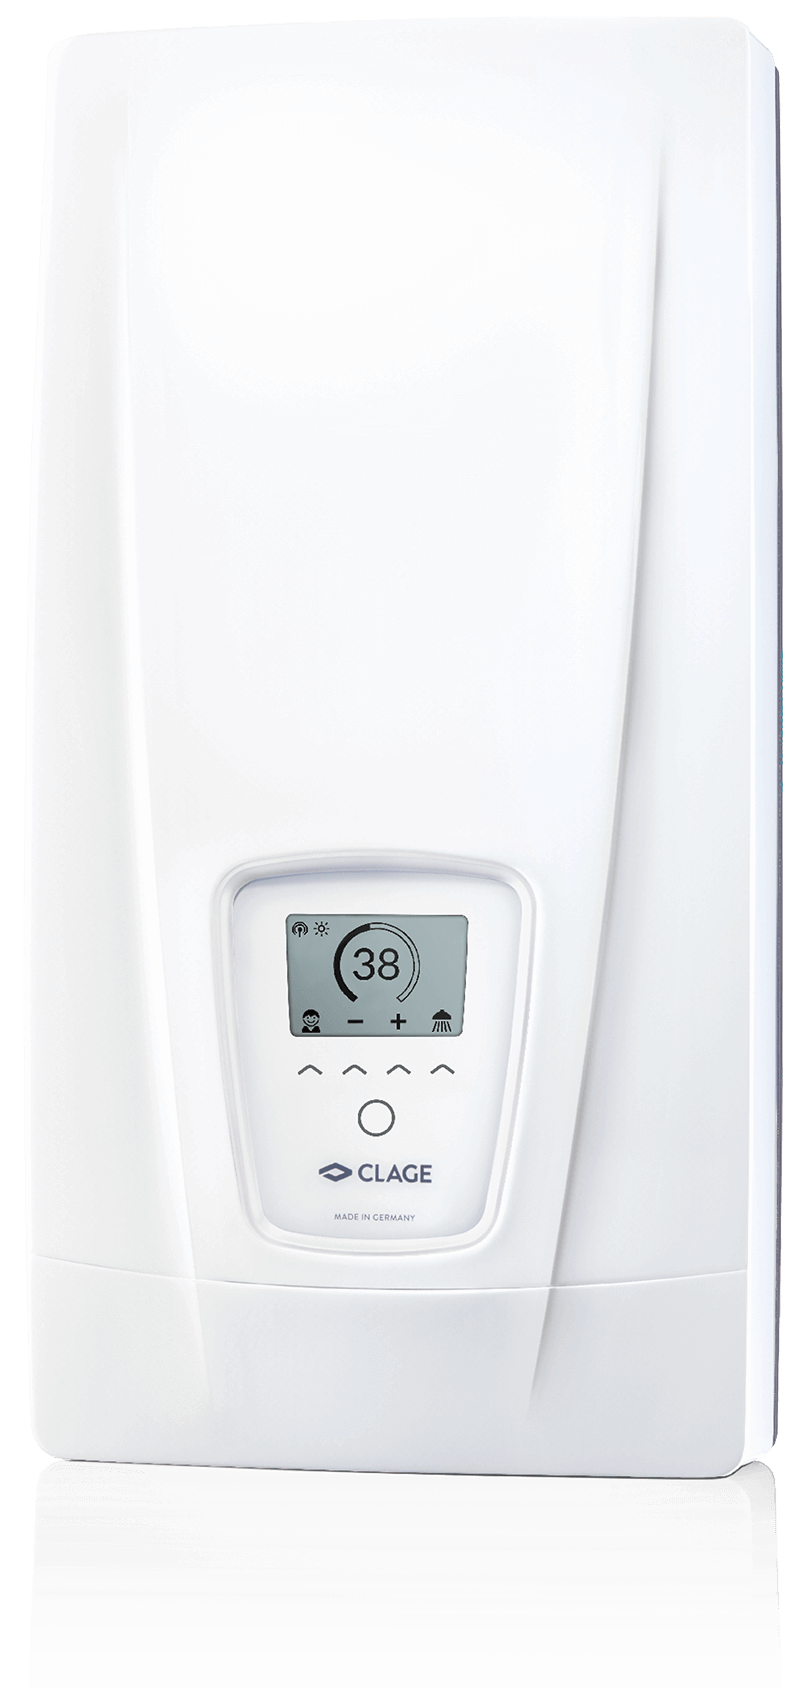 E-comfort instant water heater DEX Next